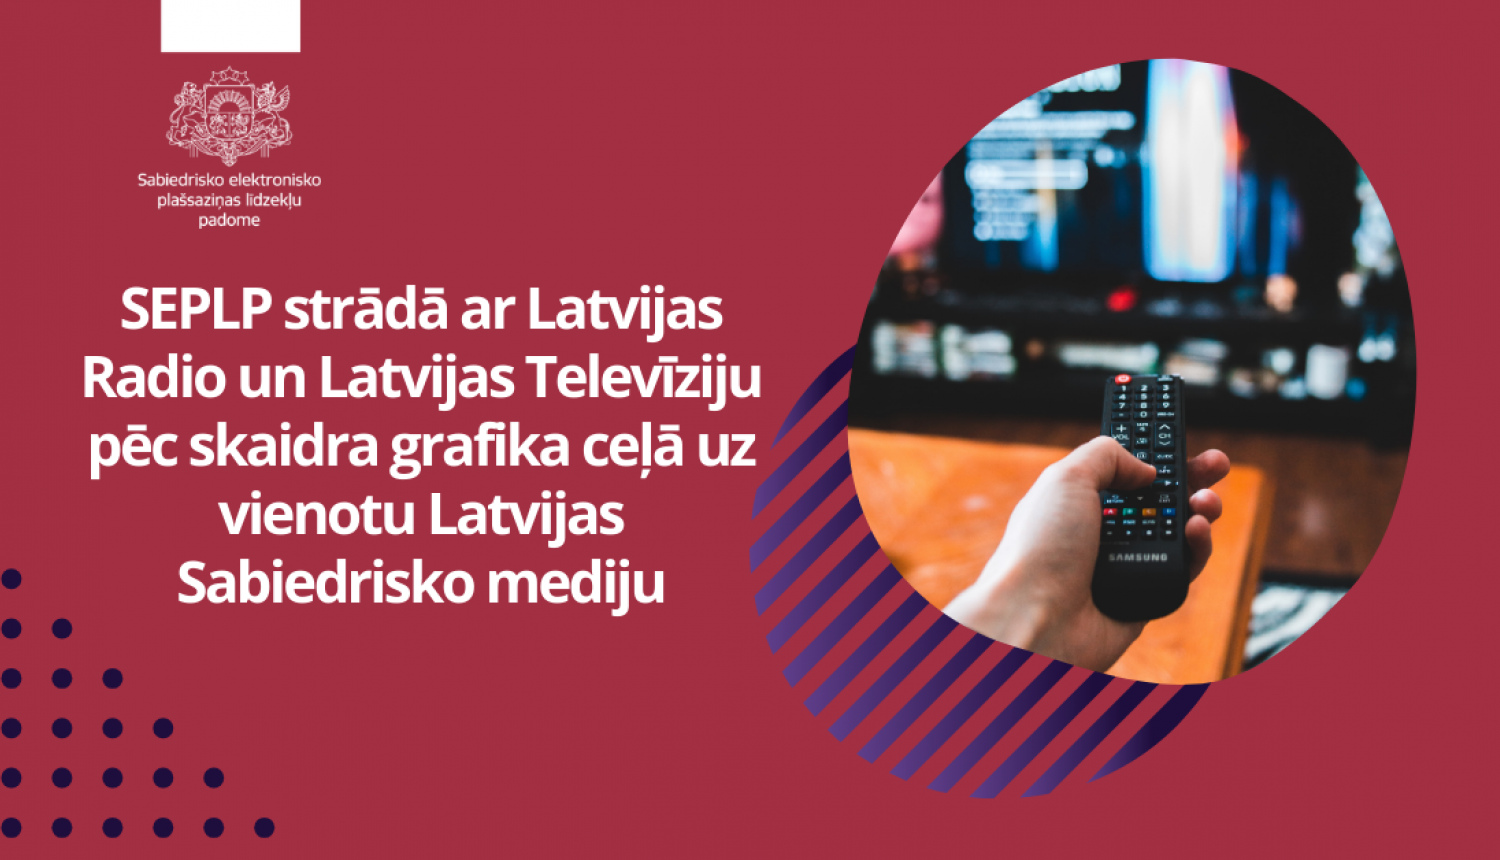 Sabiedrisko elektronisko plašsaziņas līdzekļu padomes (SEPLP) vadībā šonedēļ notikušas kārtējās darba grupu sanāksmes ar Latvijas Radio (LR) un Latvijas Televīzijas (LR) darbinieku piedalīšanos, veidojot vienotu Latvijas Sabiedriskā medija uzņēmumu. Sanāksmes notika saskaņā ar iepriekš izstrādāto darbu grafiku 2024. gadam, veicot nepieciešamās darbības pirms vienotā medija darbības sākuma 2025. gada janvārī.  Lai maksimāli nodrošinātu LR un LTV darbinieku vienotu izpratni par sadarbību nākotnē, līdzīgi kā p